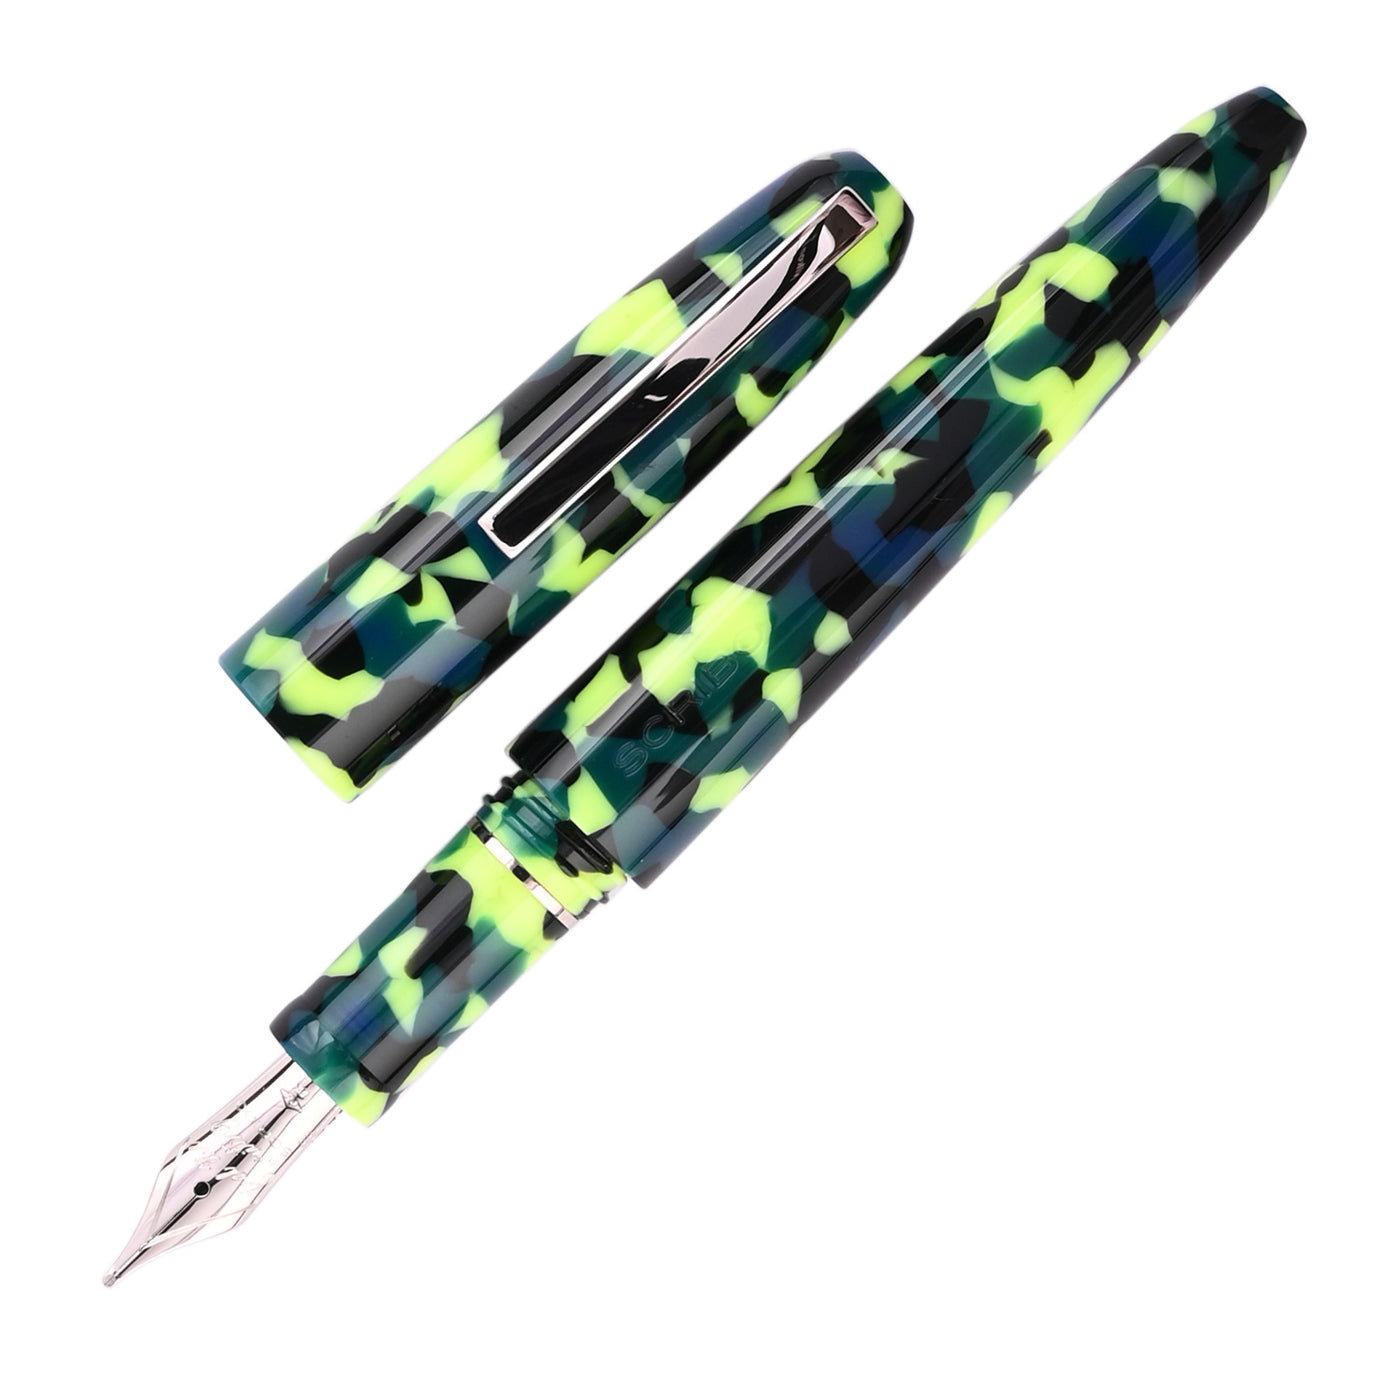 Scribo Piuma Fountain Pen - Popart (Limited Edition) 1